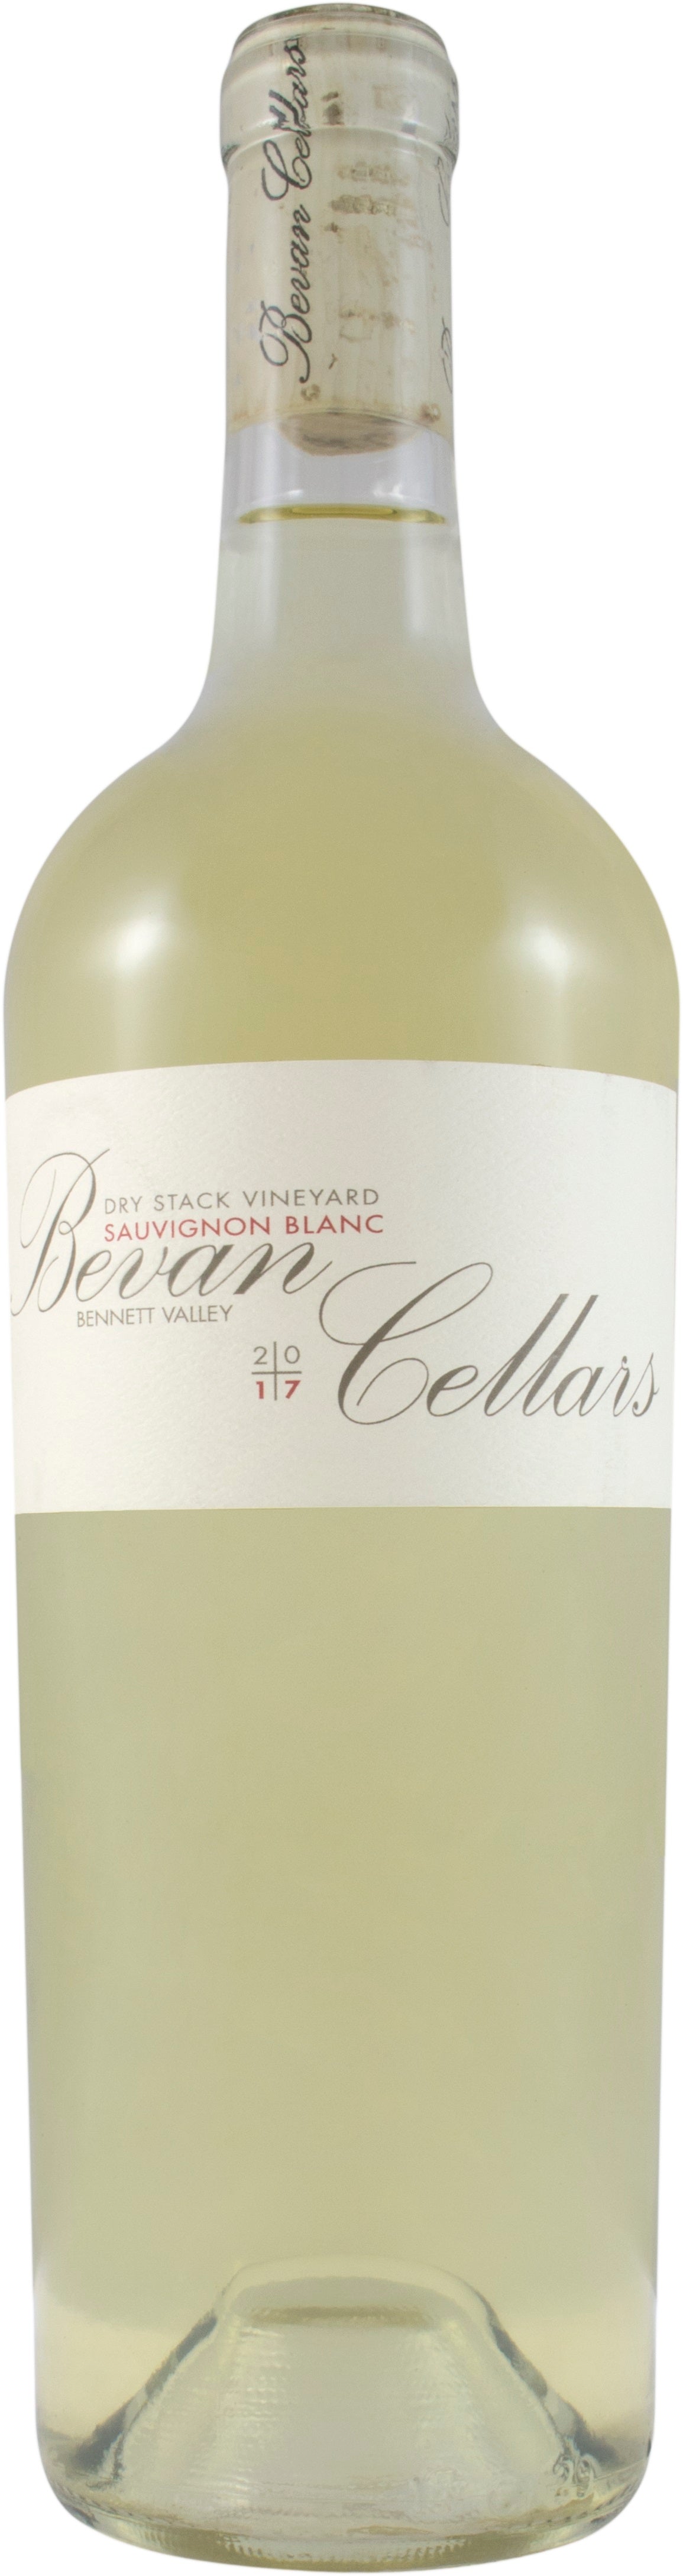 Bevan Cellars Sauvignon Blanc Dry Stack Vineyard 2019